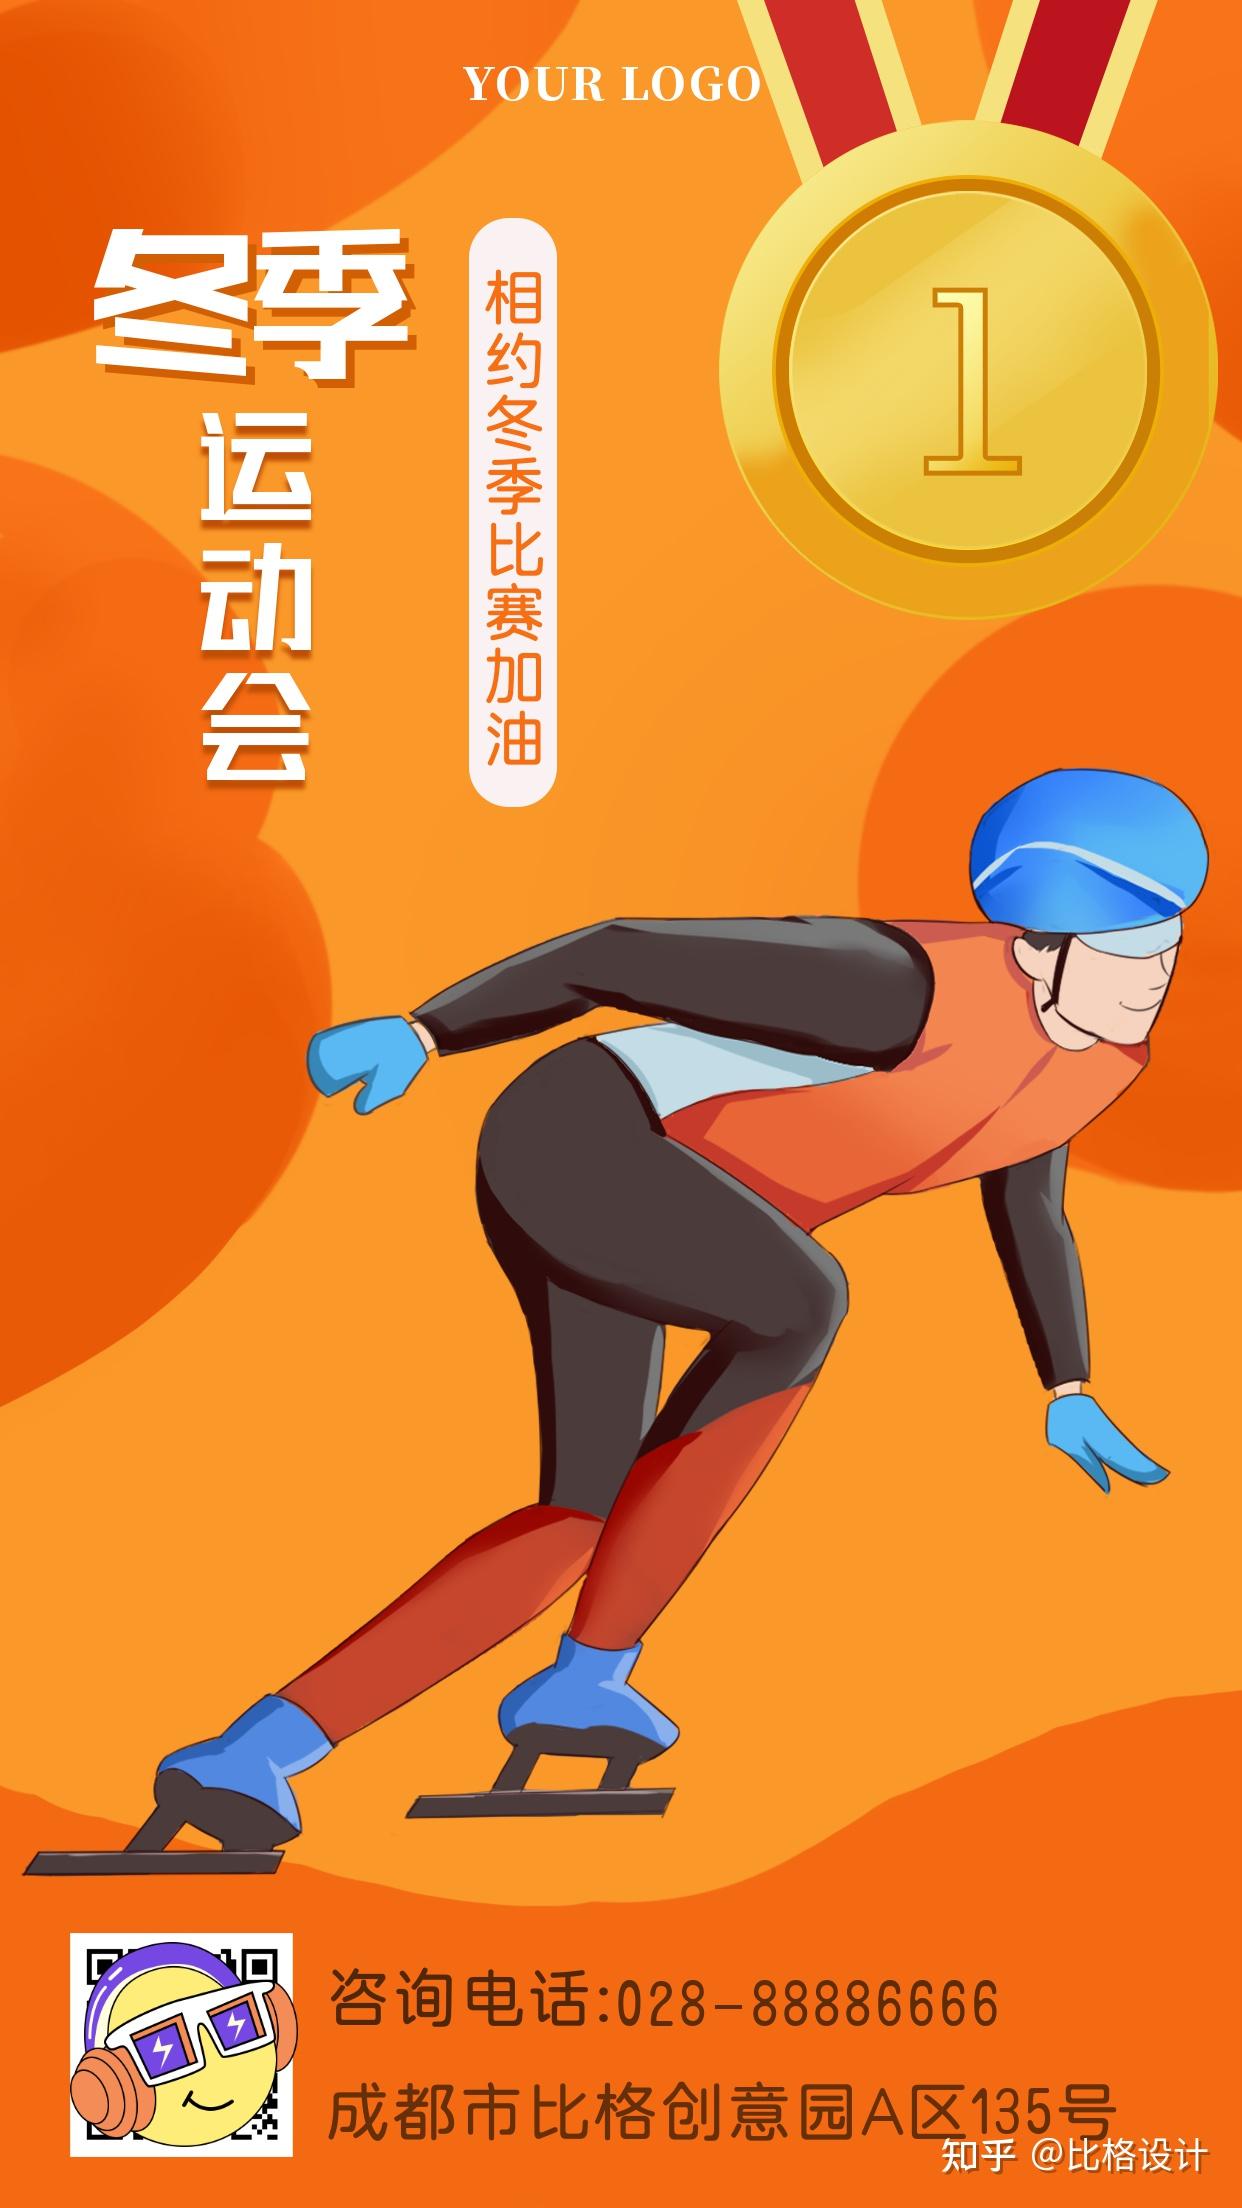 “一起向未来”！北京冬奥会、冬残奥会主题口号发布-迎北京冬奥 游龙江冰雪-东北网